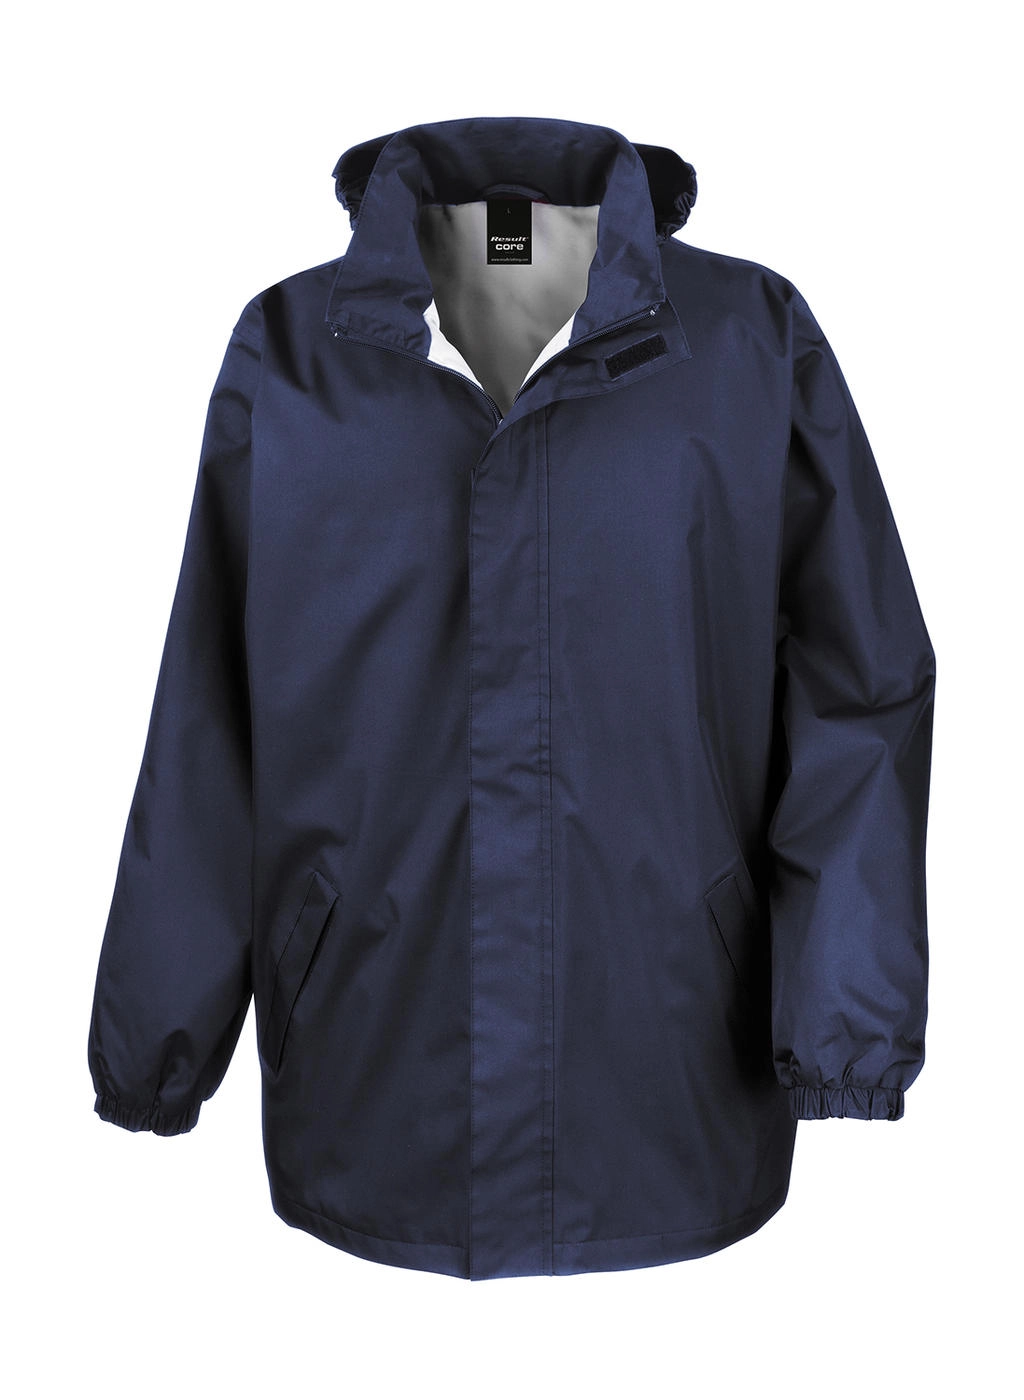 Core Midweight Jacket zum Besticken und Bedrucken in der Farbe Navy mit Ihren Logo, Schriftzug oder Motiv.